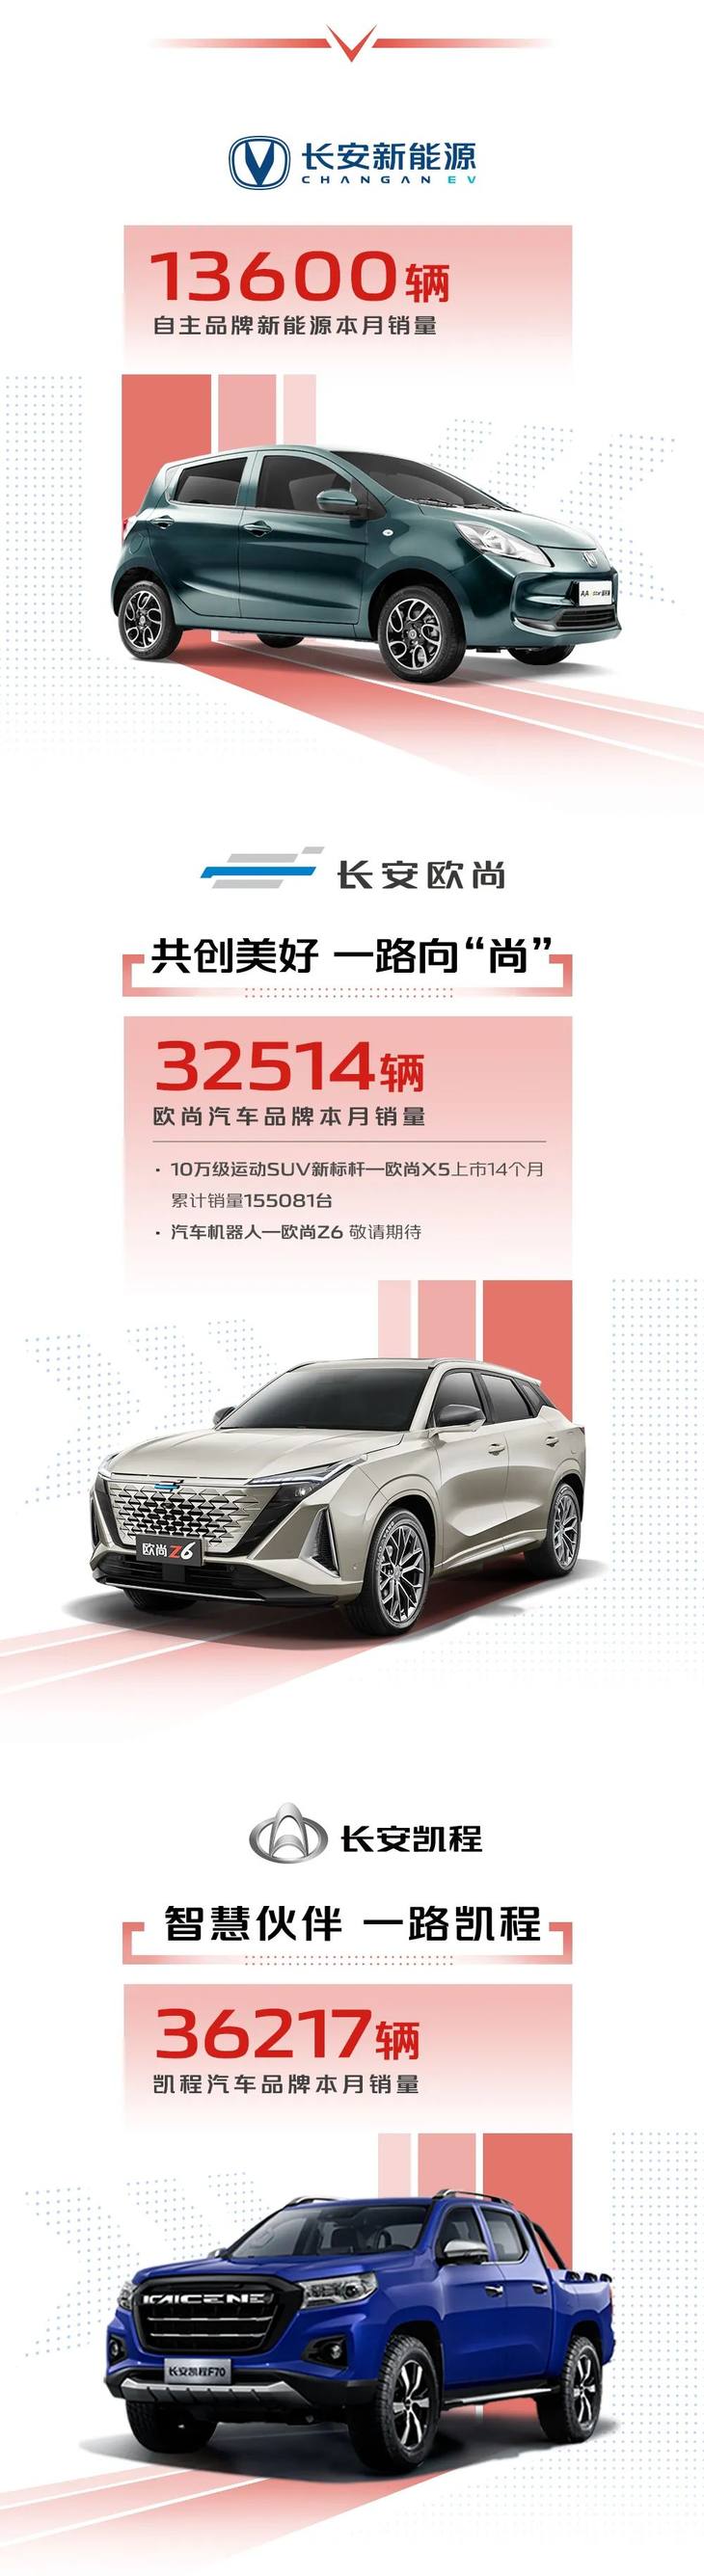 长安汽车集团1月销量公布 单月销量突破27.7万辆